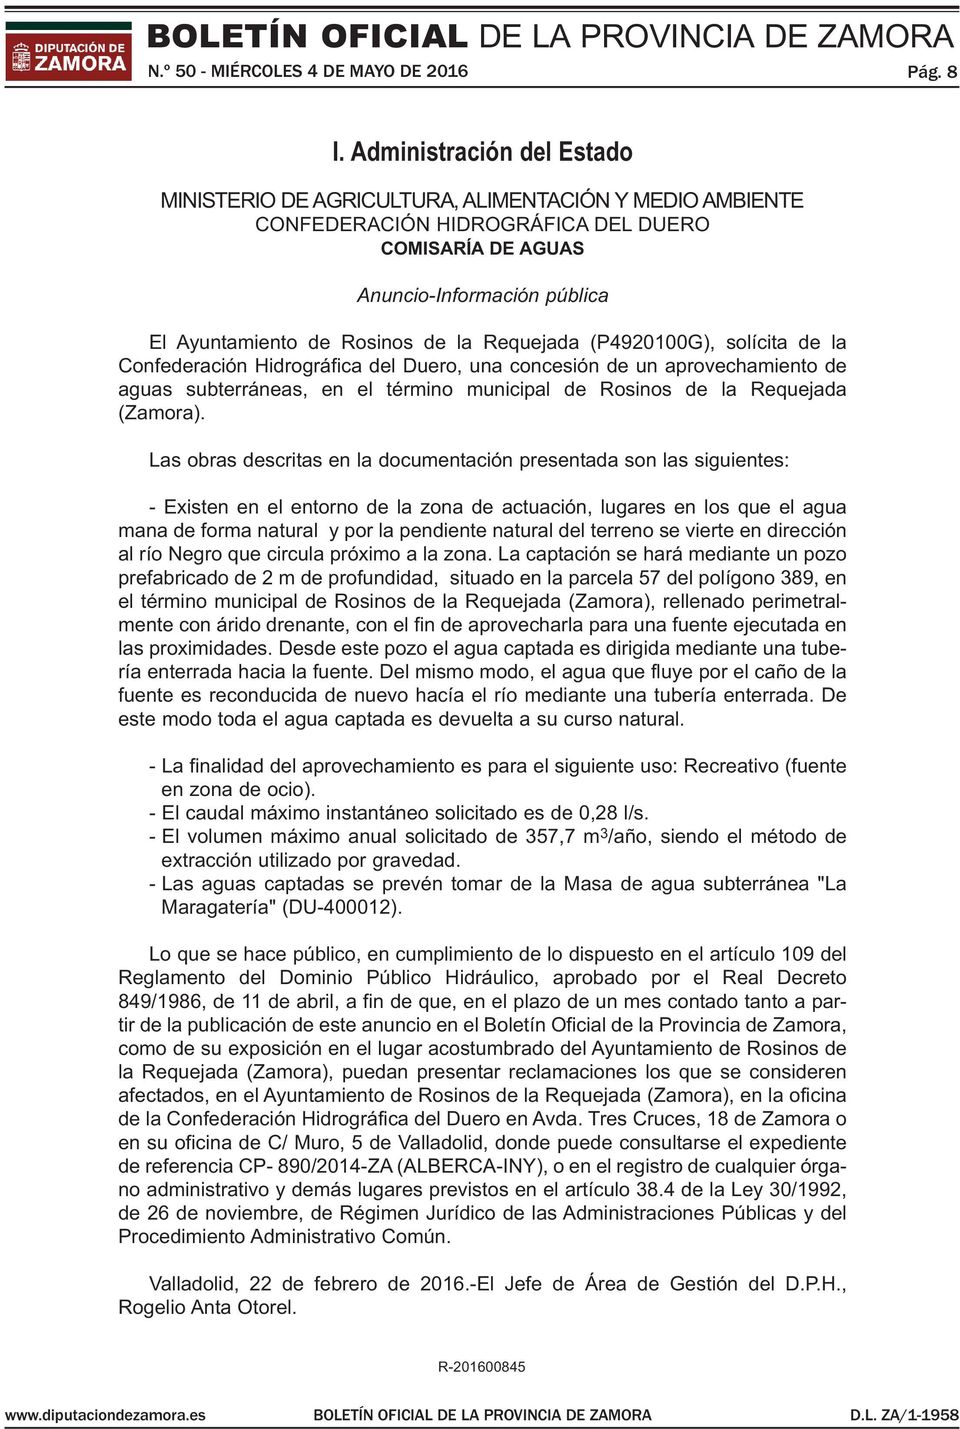 Requejada (P4920100g), solícita de la confederación hidrográfica del duero, una concesión de un aprovechamiento de aguas subterráneas, en el término municipal de Rosinos de la Requejada (Zamora).